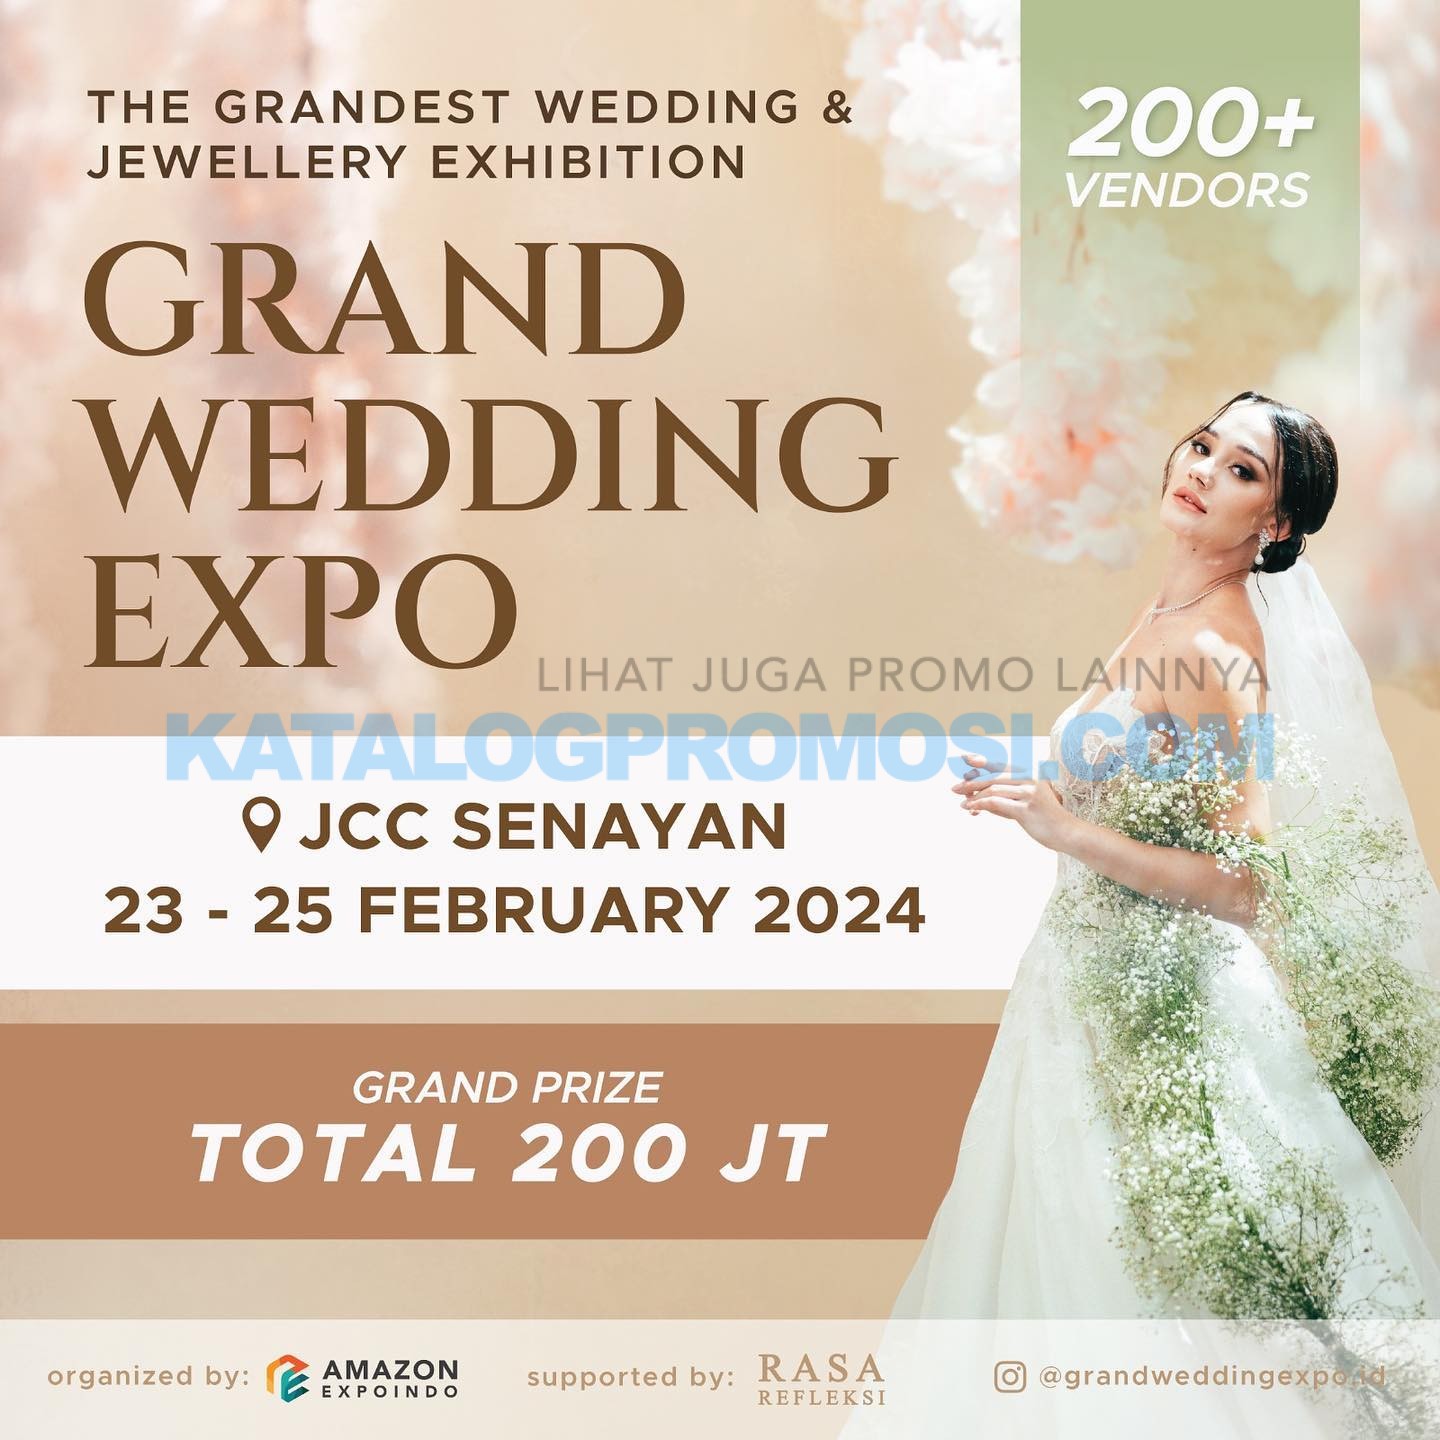 GRAND WEDDING EXPO 2024 tanggal 23-25 Februari 2024 di JCC Senayan